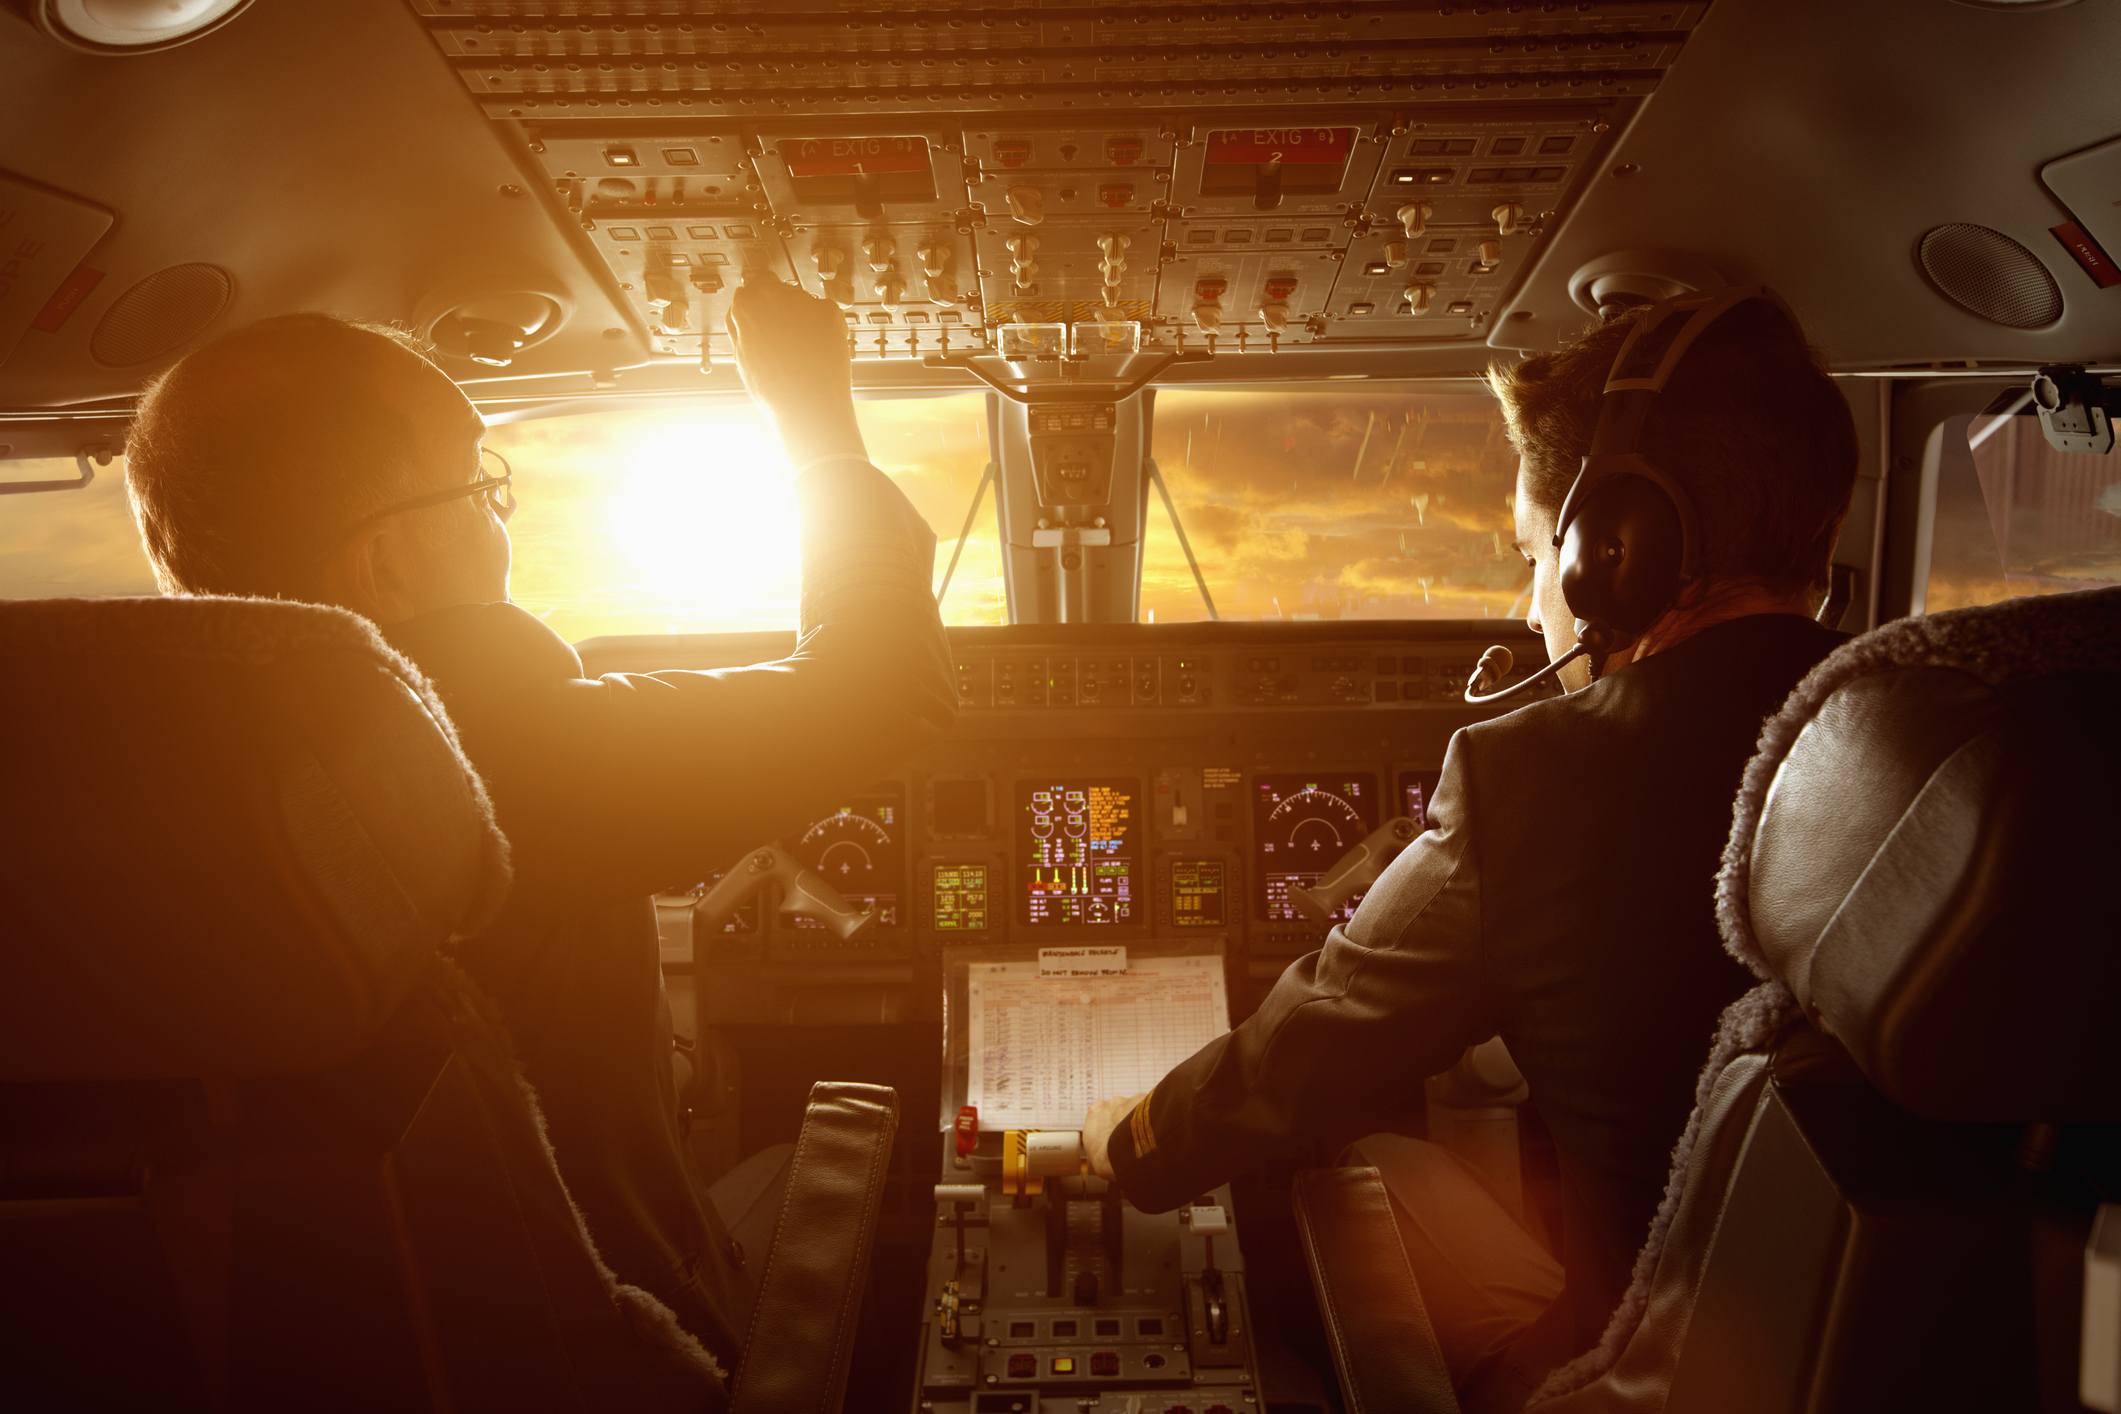 Két pilóta gyomorrontással nem épp a legbiztonságosabb módja a repülésnek, ezt próbálják elkerülni a légitársaságok